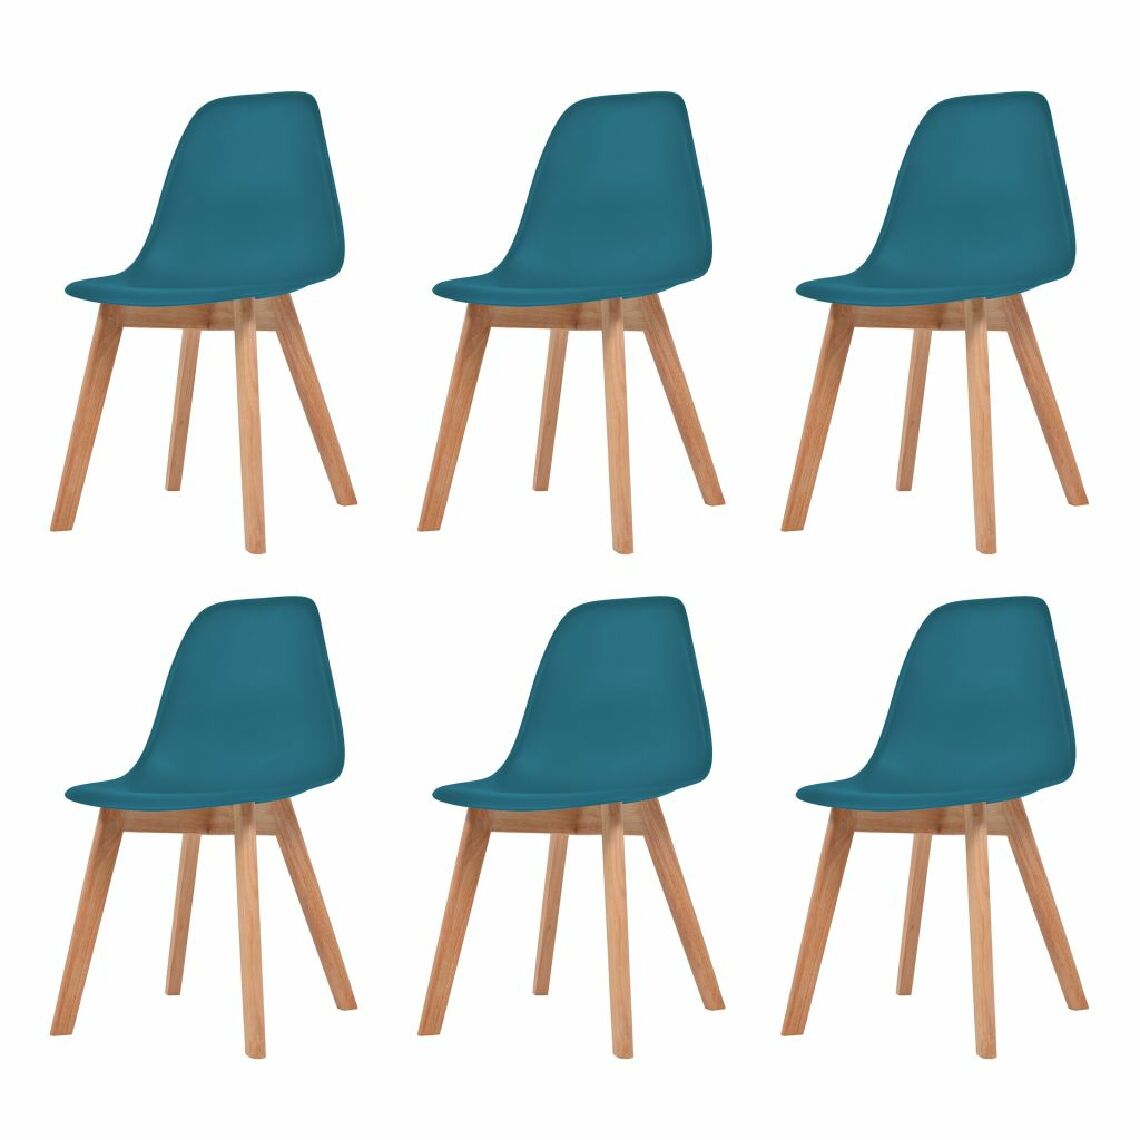 Chunhelife - Chunhelife Chaises de salle à manger 6 pcs Turquoise Plastique - Chaises